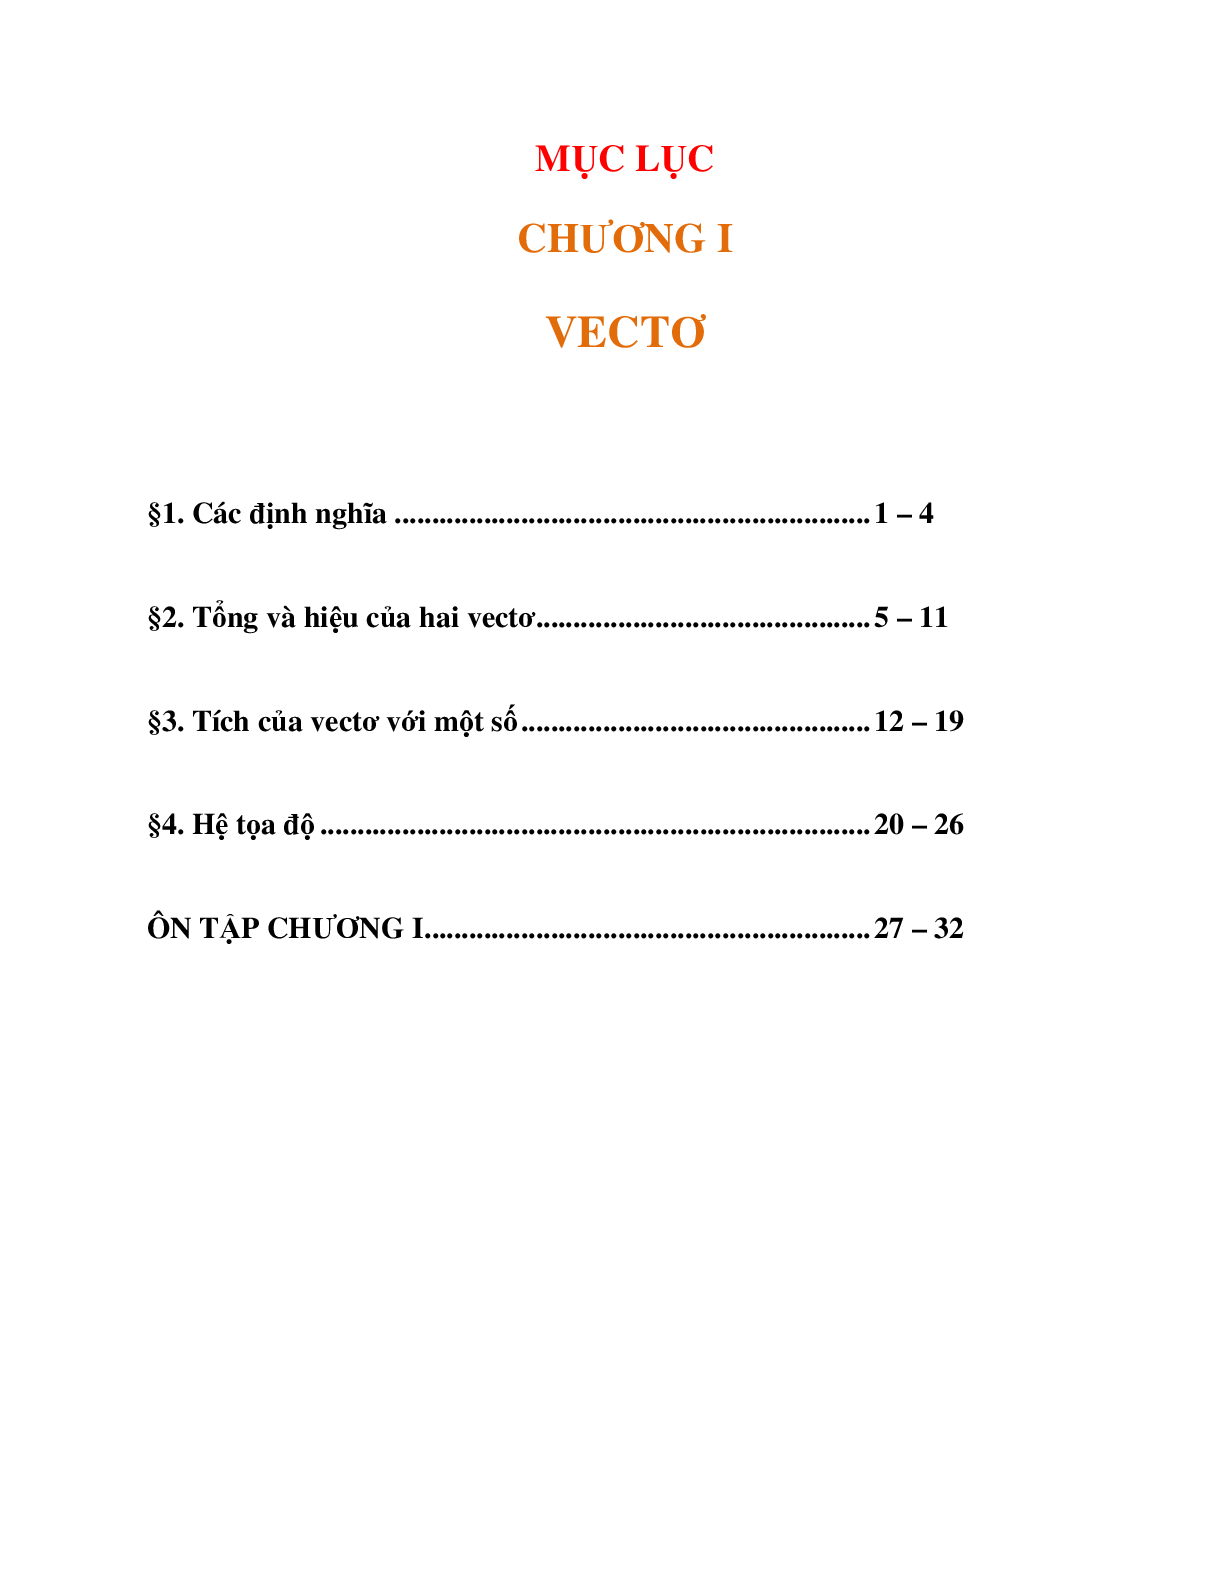 Tài liệu học tập chủ đề Vectơ đầy đủ và chi tiết (trang 4)